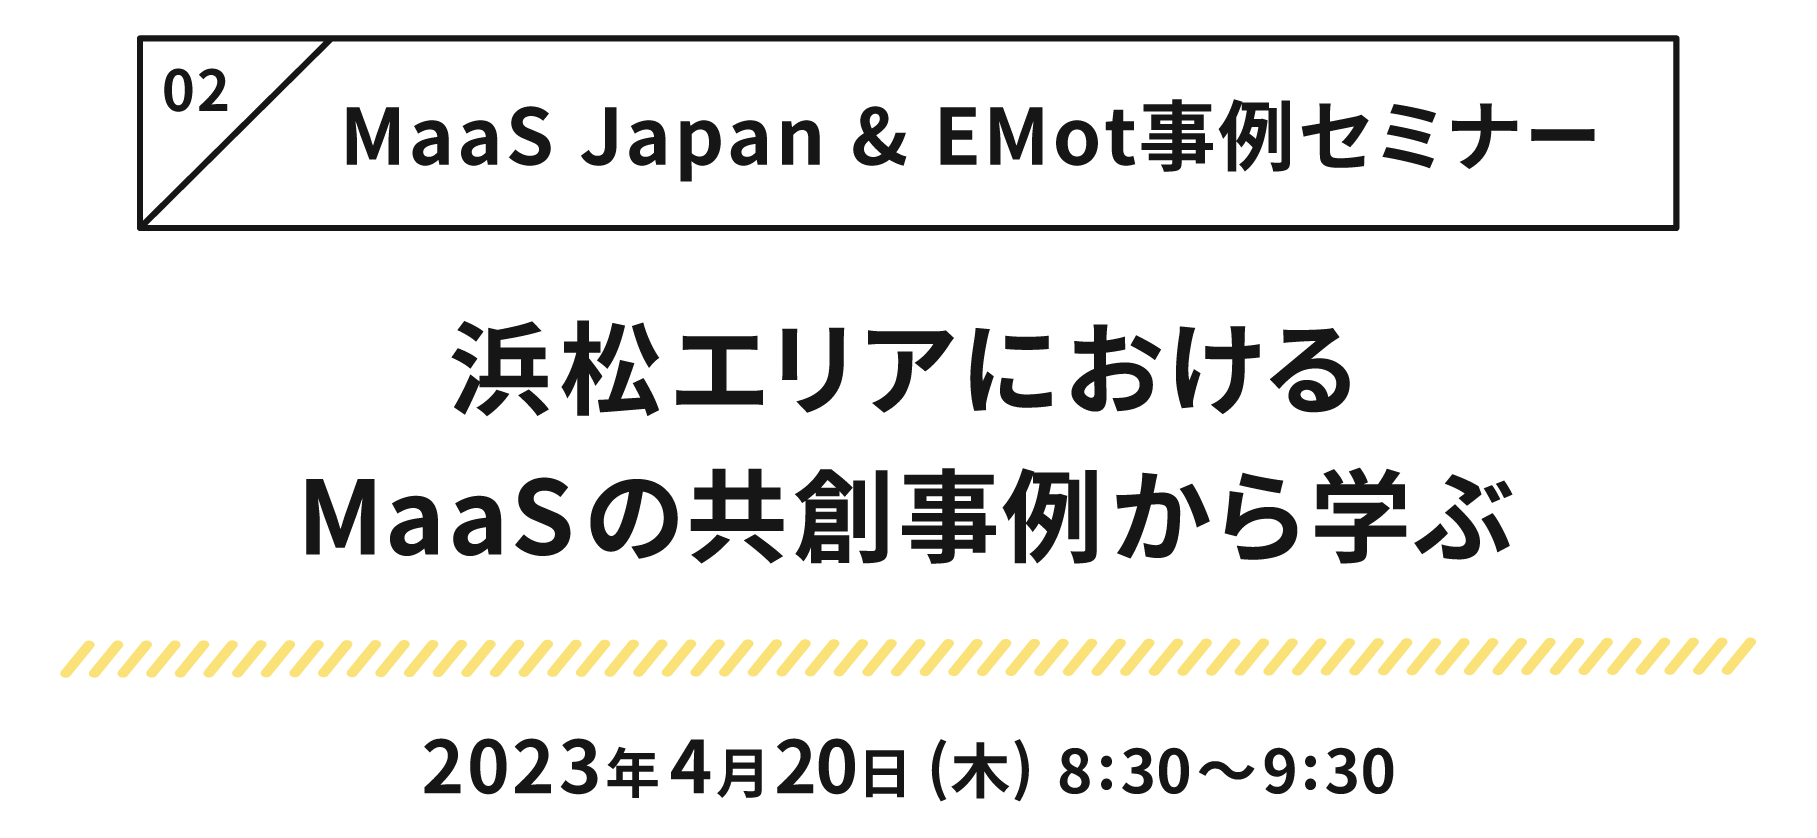 第1回 MaaS Japan＆EMot事例セミナー 浜松エリアにおけるMaaSの共創事例から学ぶ 2023年4月20日(木) 8:30〜9:30